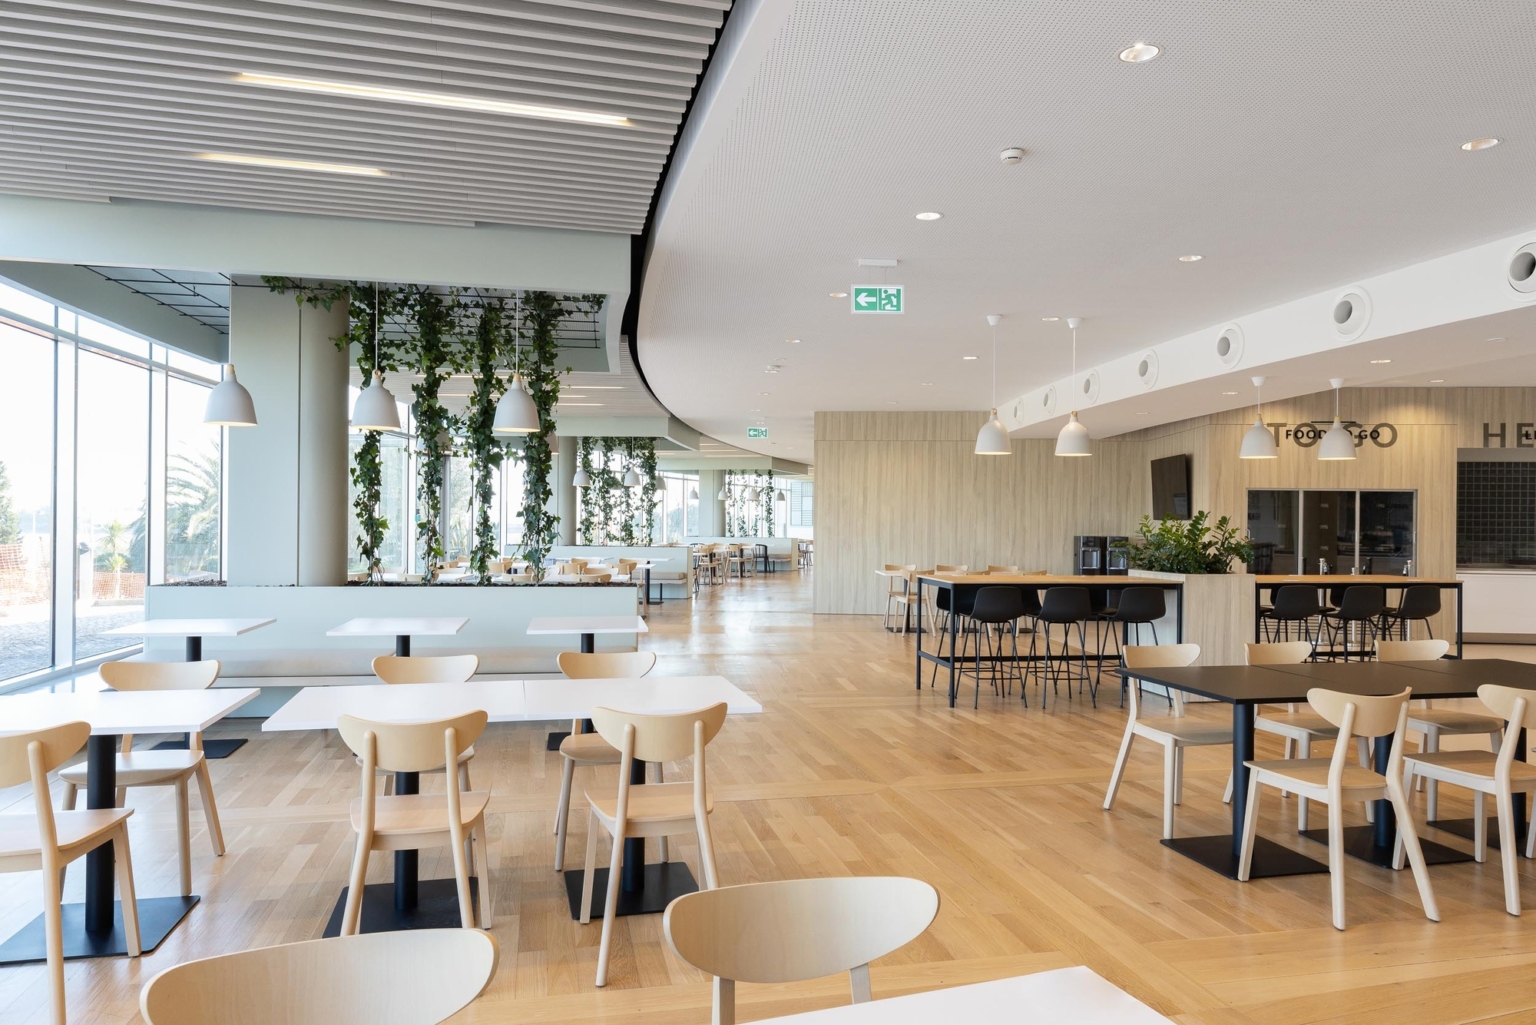 Nestlé (ネスレ)のオフィス - ポルトガル,リスボンのカフェ/レストランスペース